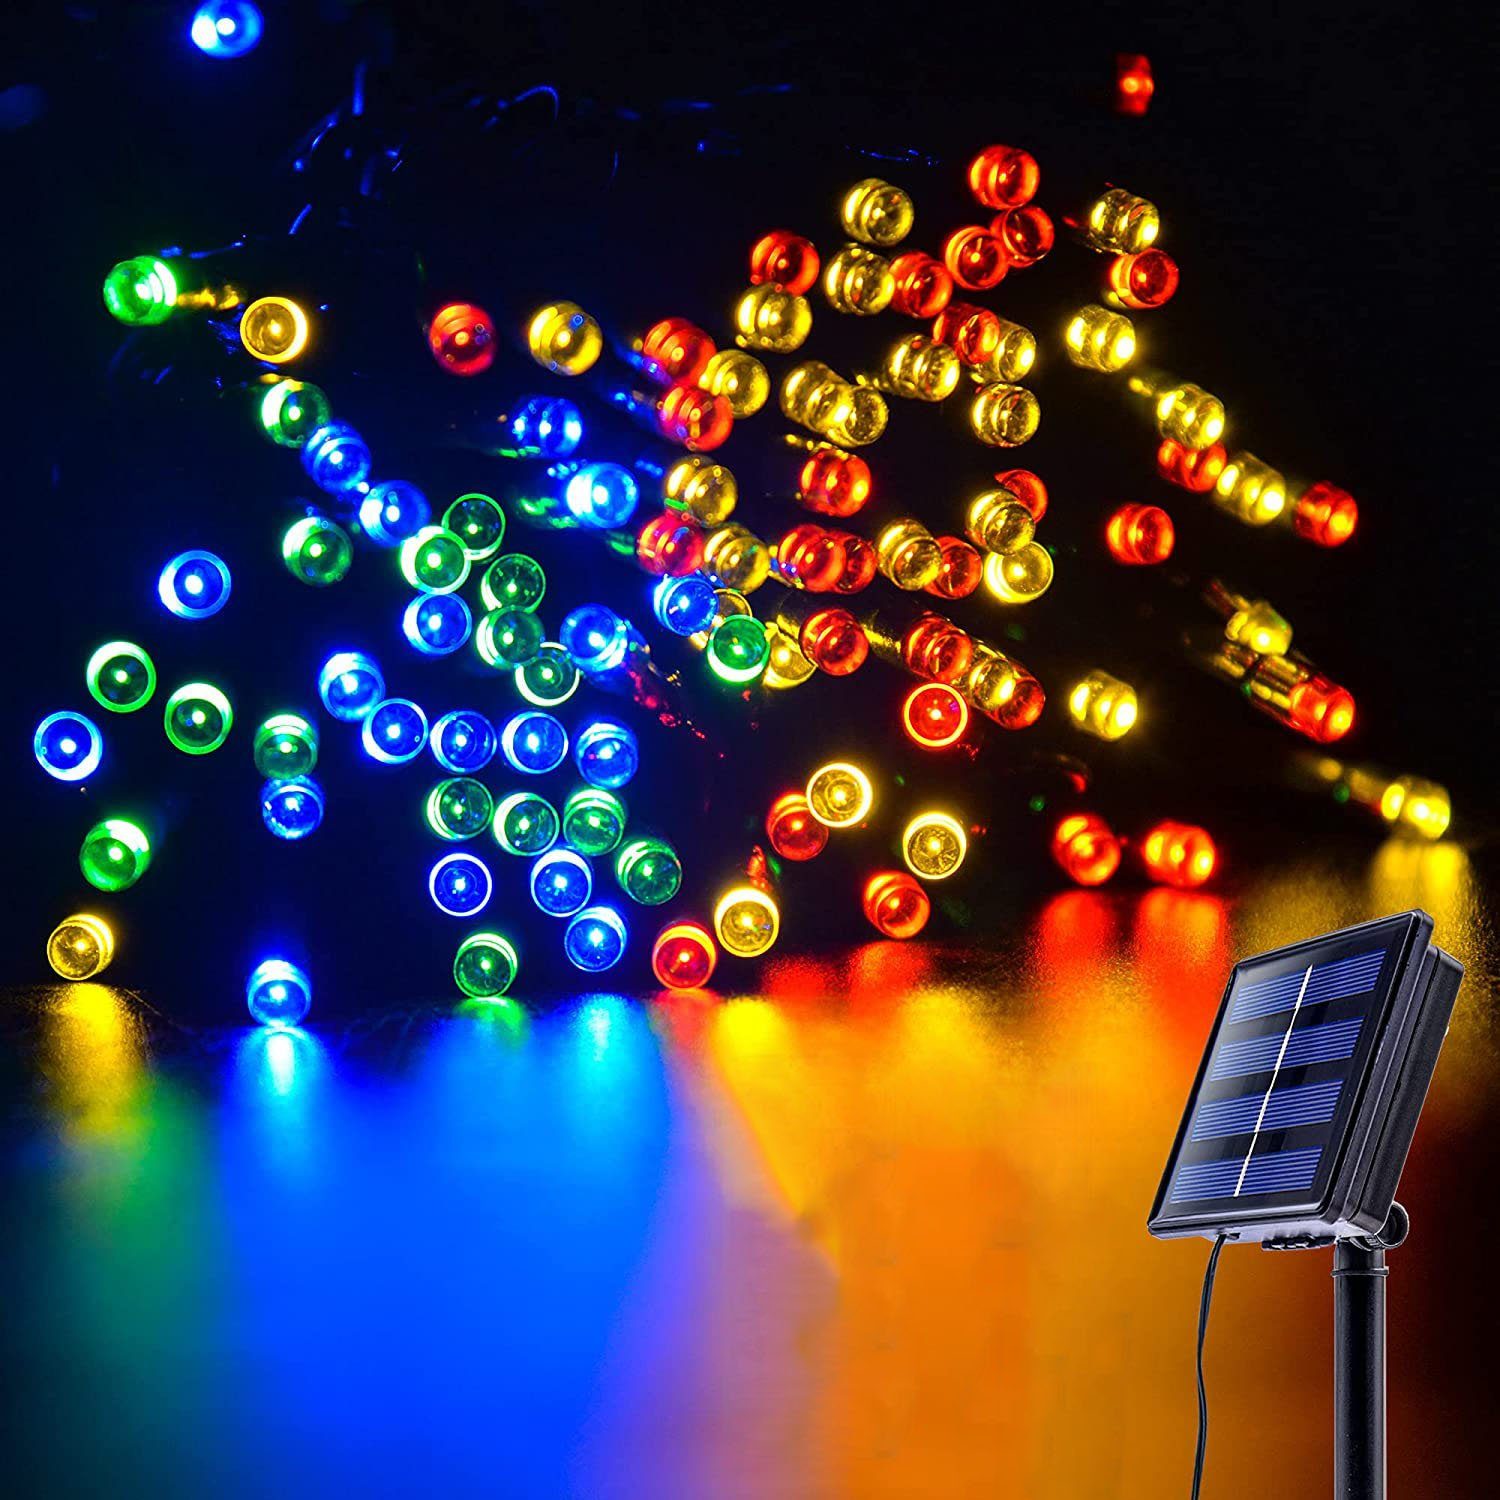 100 LED Lichterkette mit Fernbedienung und Timer 11m 8 Modi Dimmbar Outdoor Weihnachtslichterkette Batteriebetrieben Warmweiß